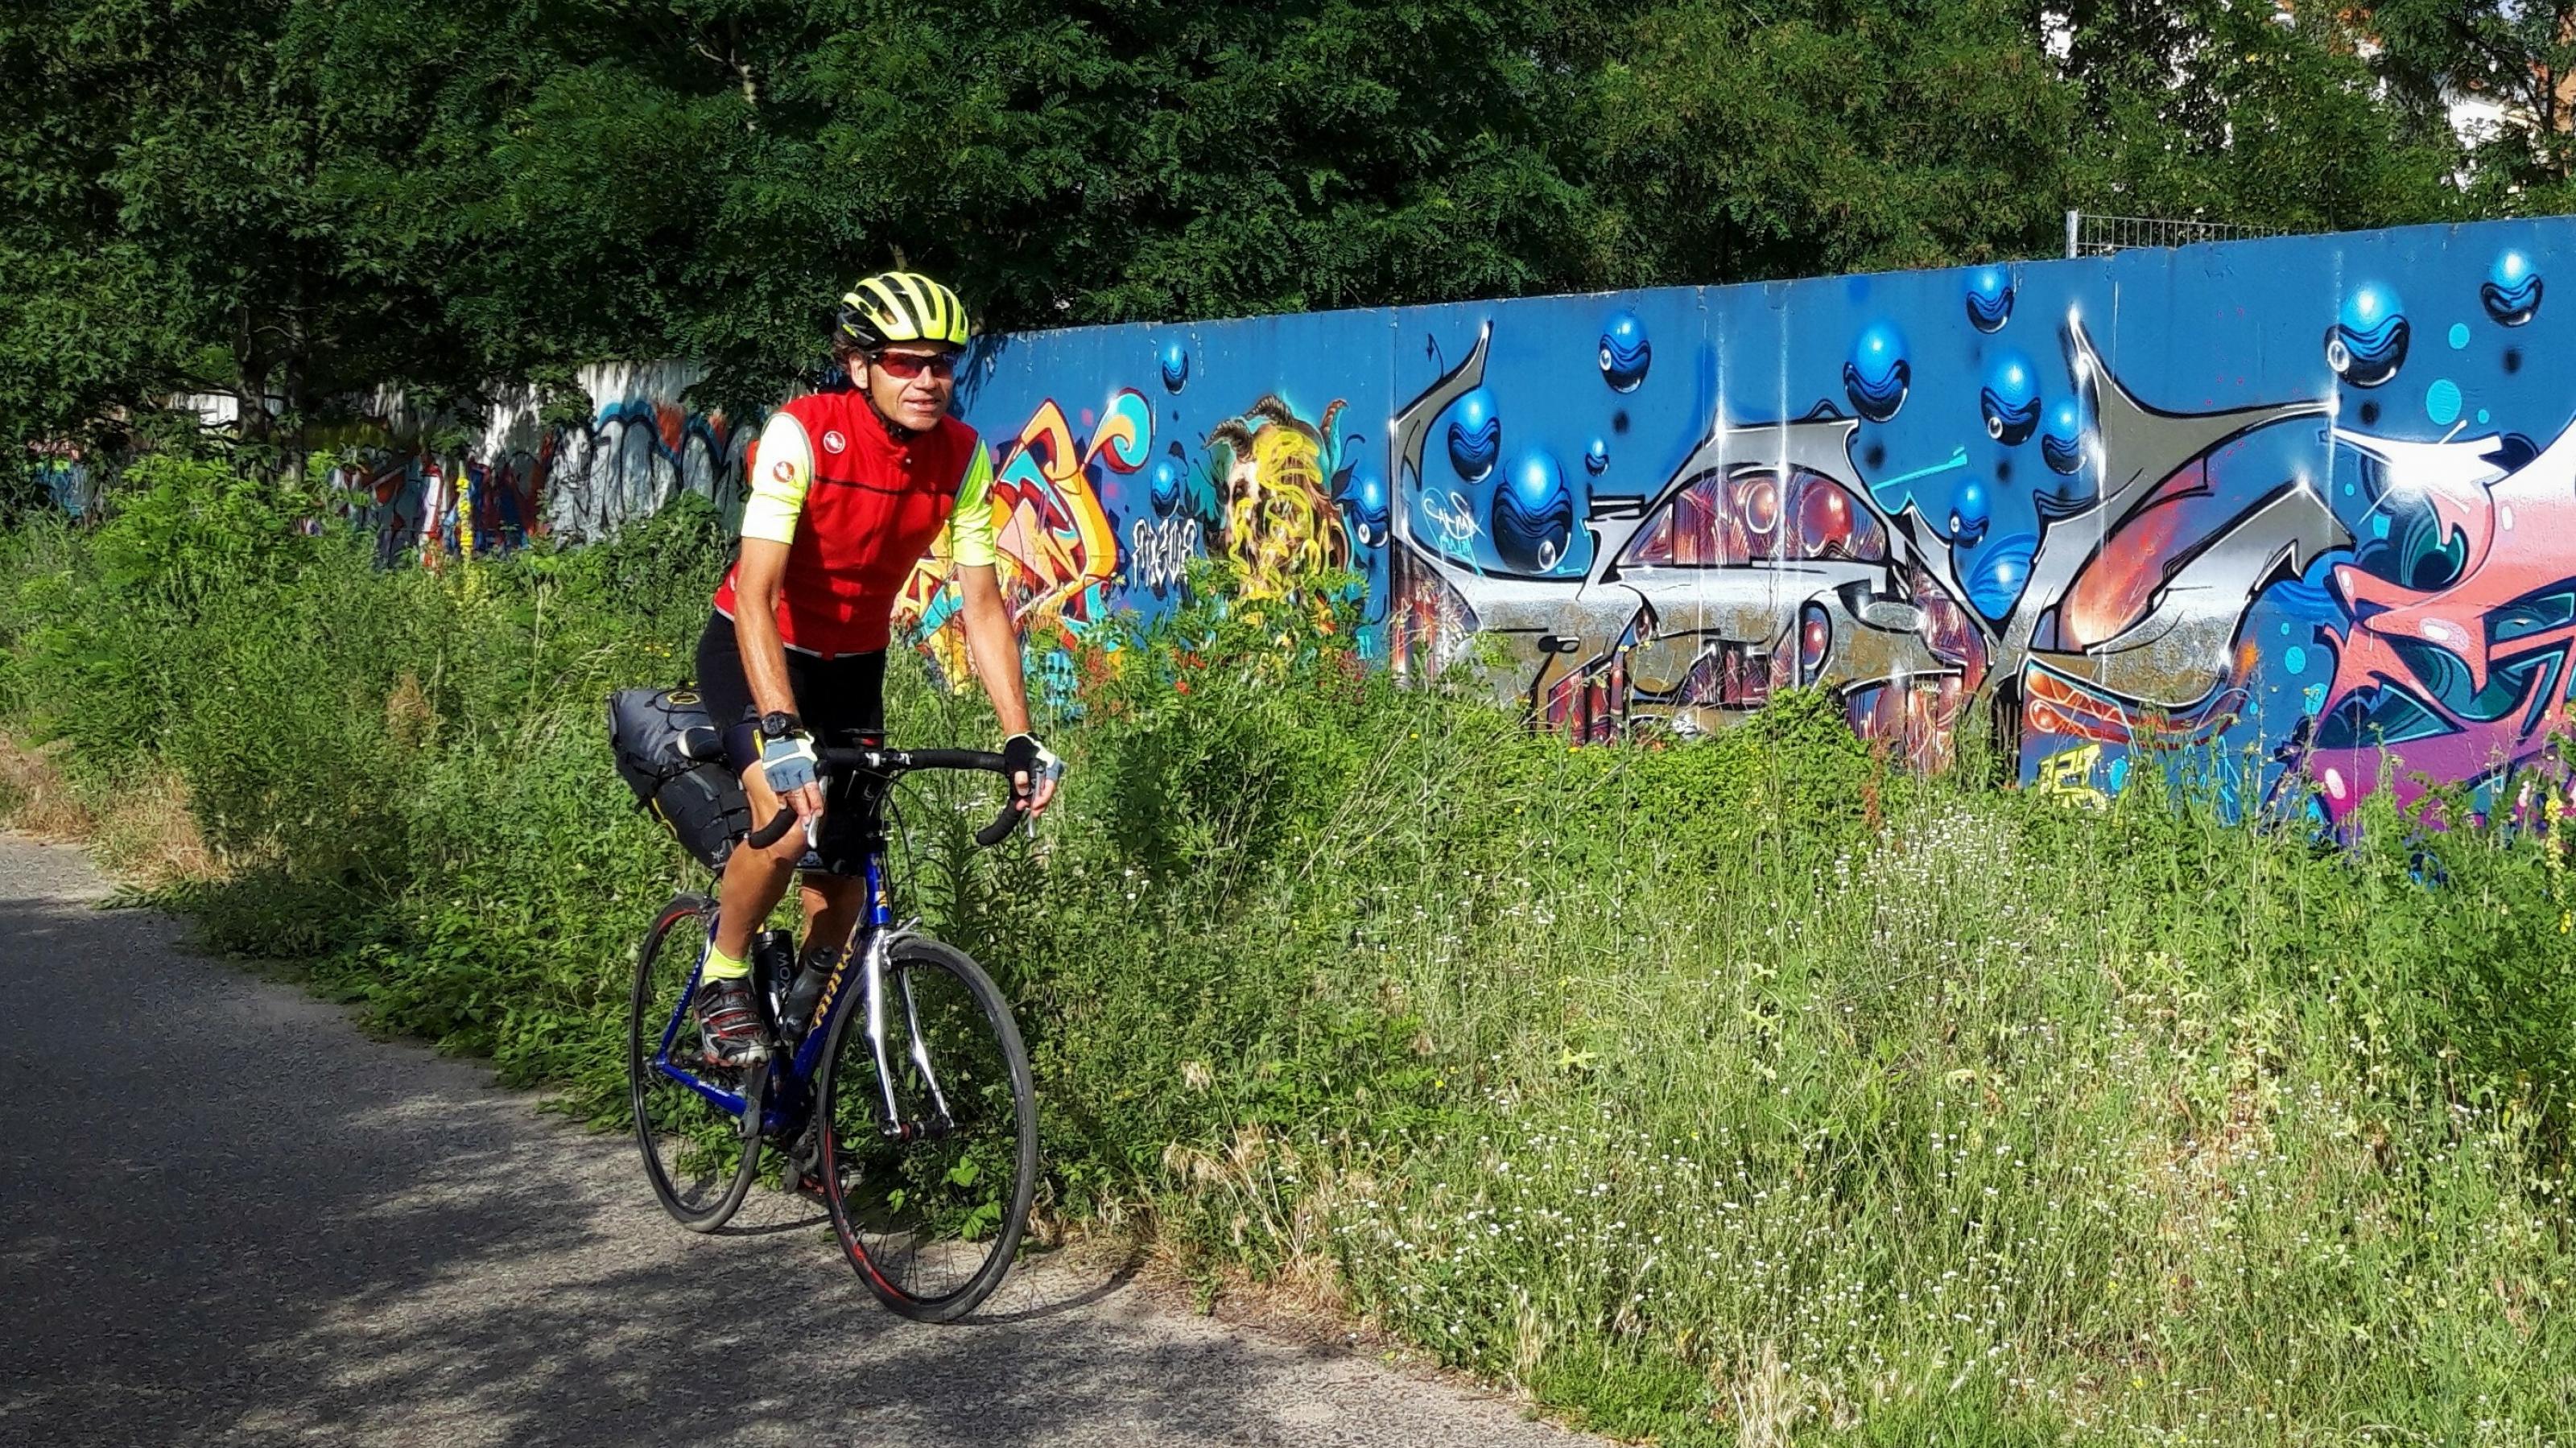 Der gelb behelmte Radfahrer fährt auf seinem Rennrad entlang eines Grünstreifens, hinter dem eine von der Grundfarbe blaue, aber quirlig bunt bemalte und besprühte Mauer aufragt.